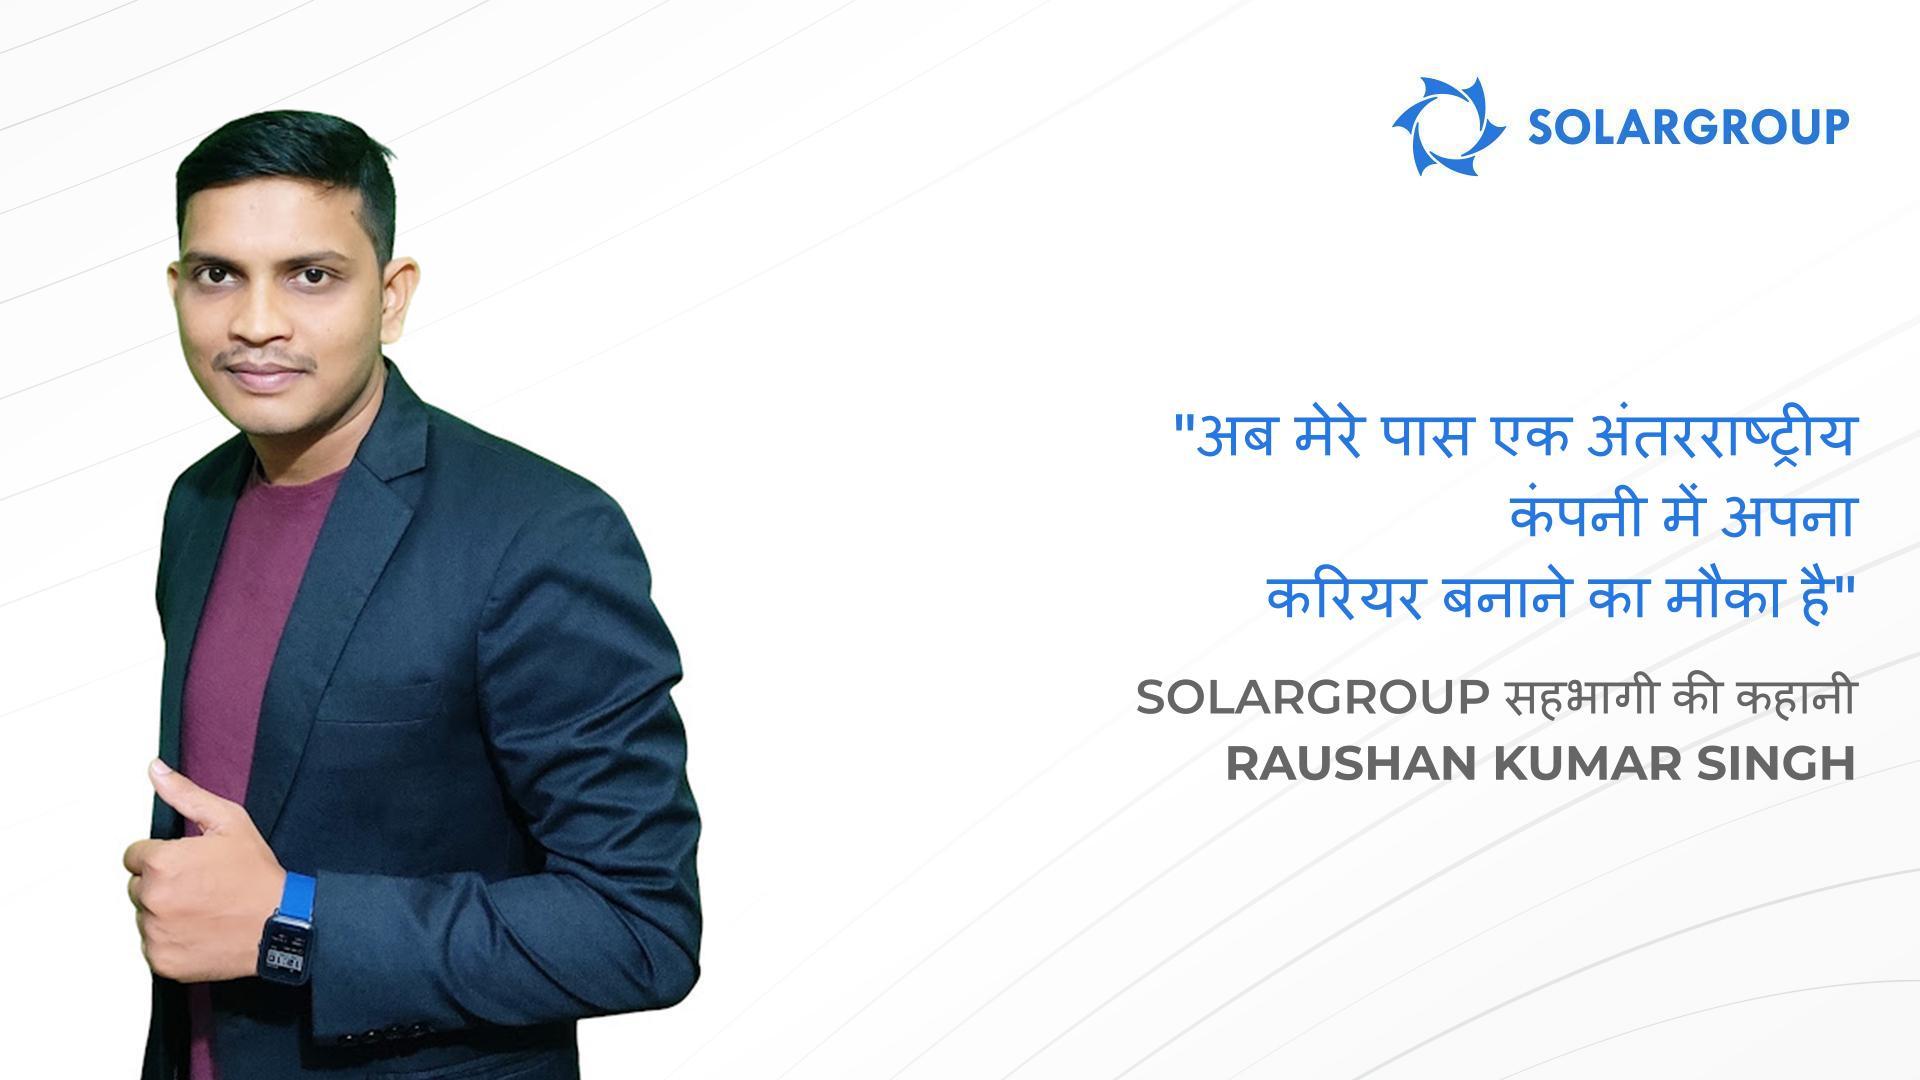 SOLARGROUP के साथ मेरे पास वे अवसर हैं जिनका मैं केवल सपना देख सकता था | SOLARGROUP सहभागी Raushan Kumar Singh, भारत की कहानी